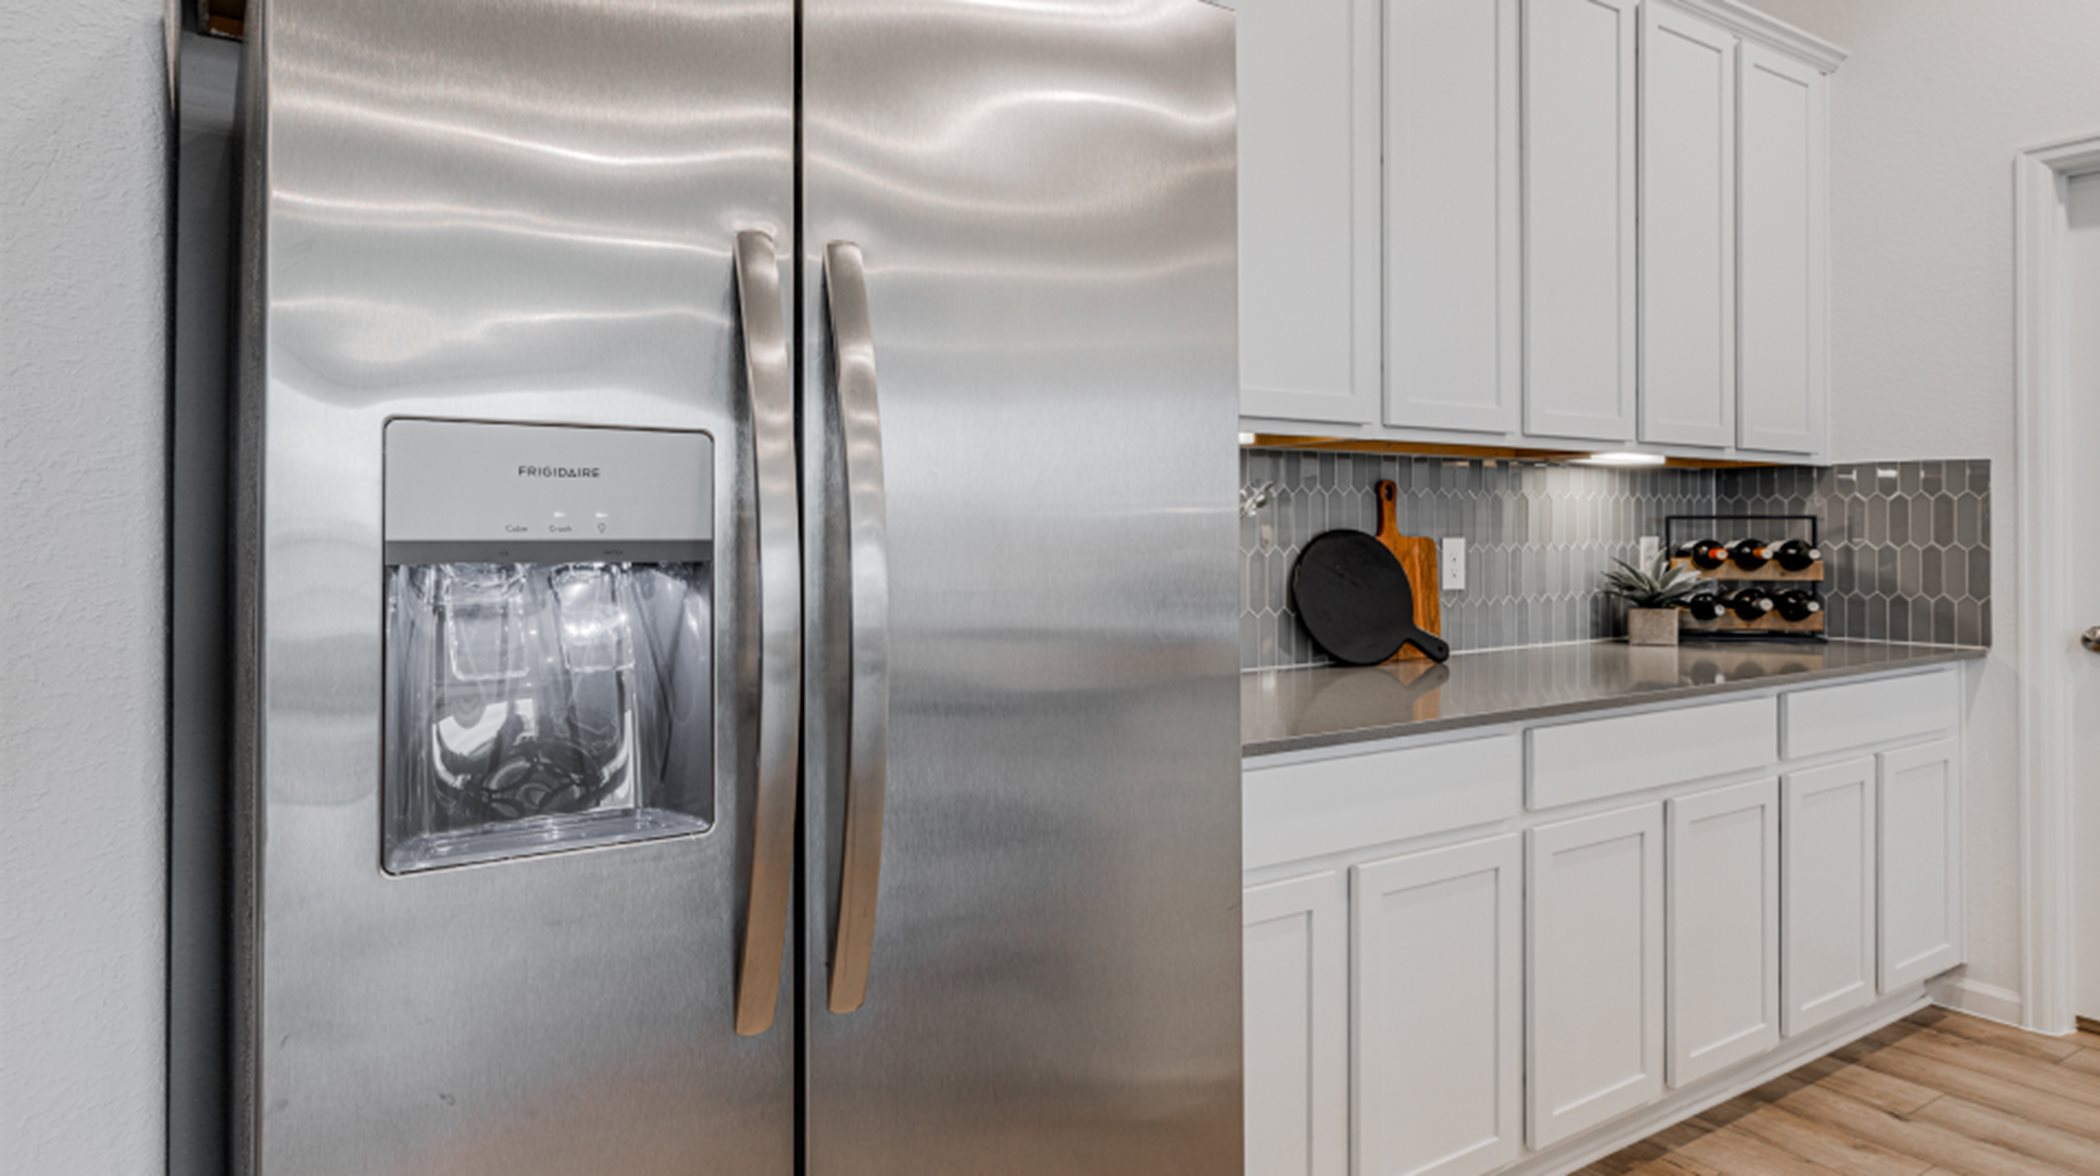 Stainless steel double door refrigerator